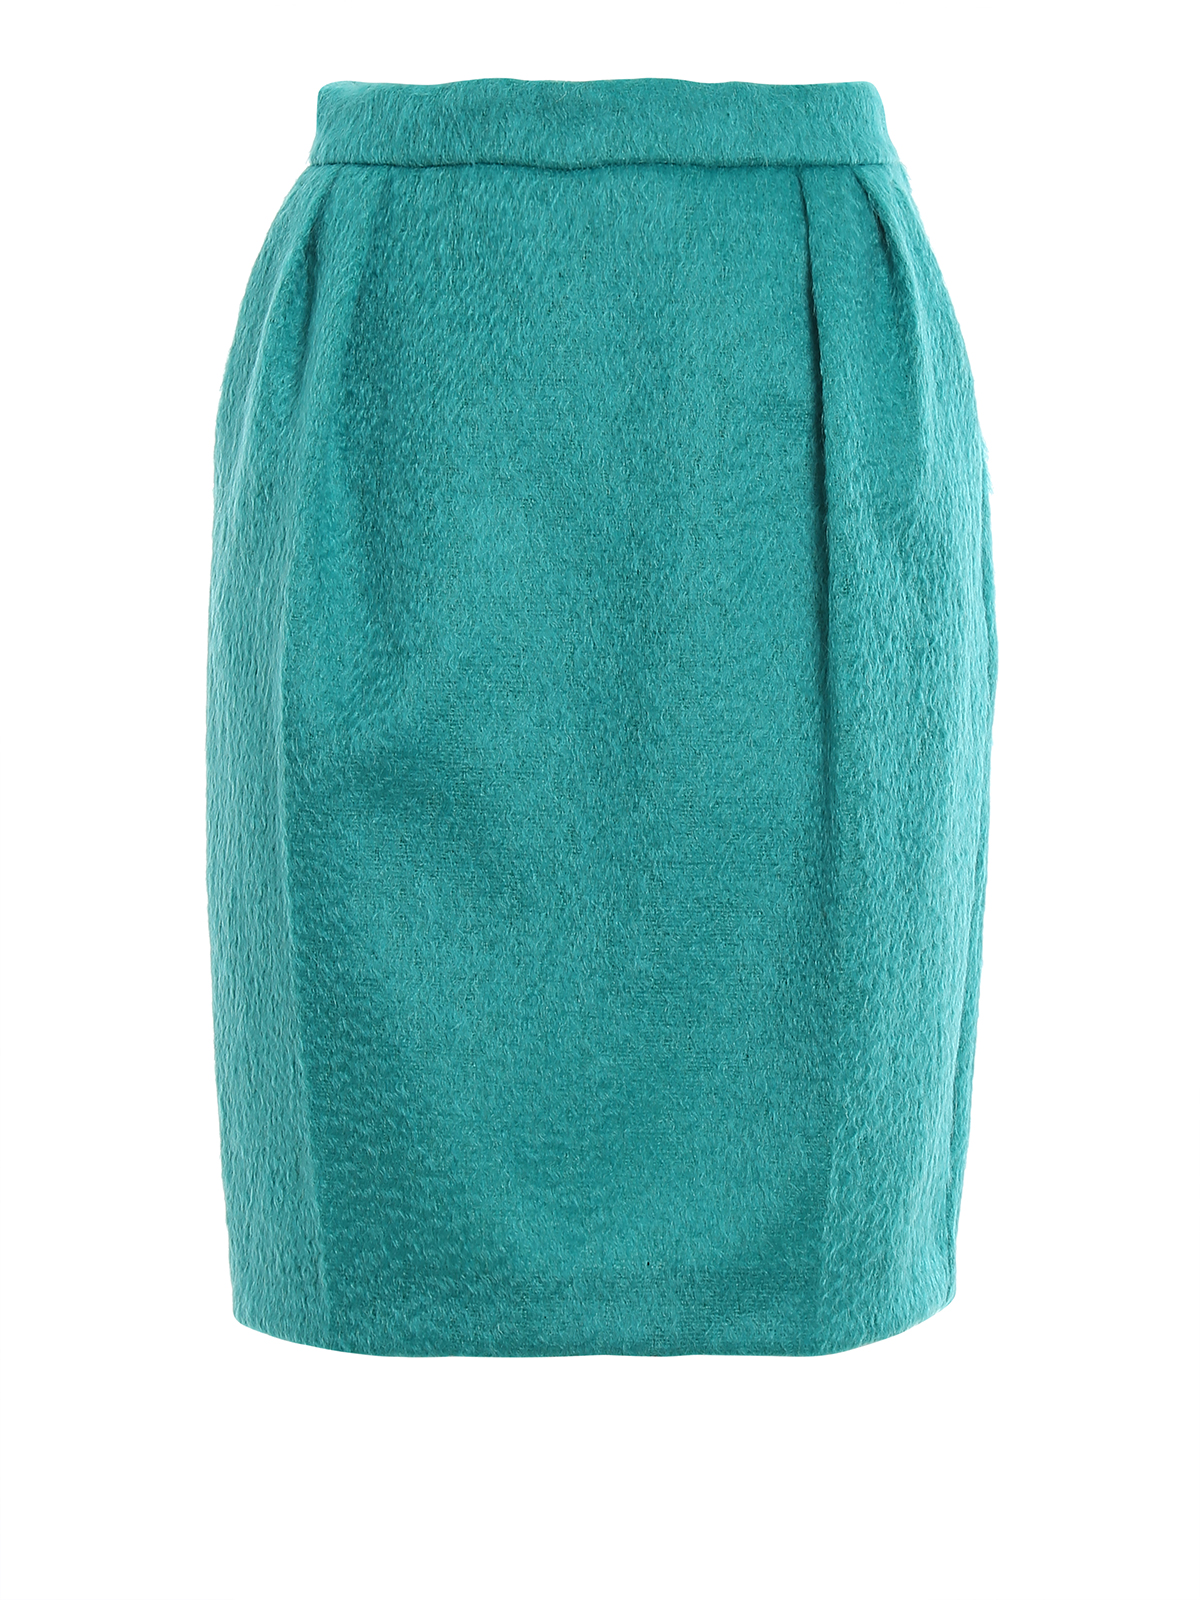 Knee length skirts & Midi Max Mara - Turchia turquoise mohair blend ...